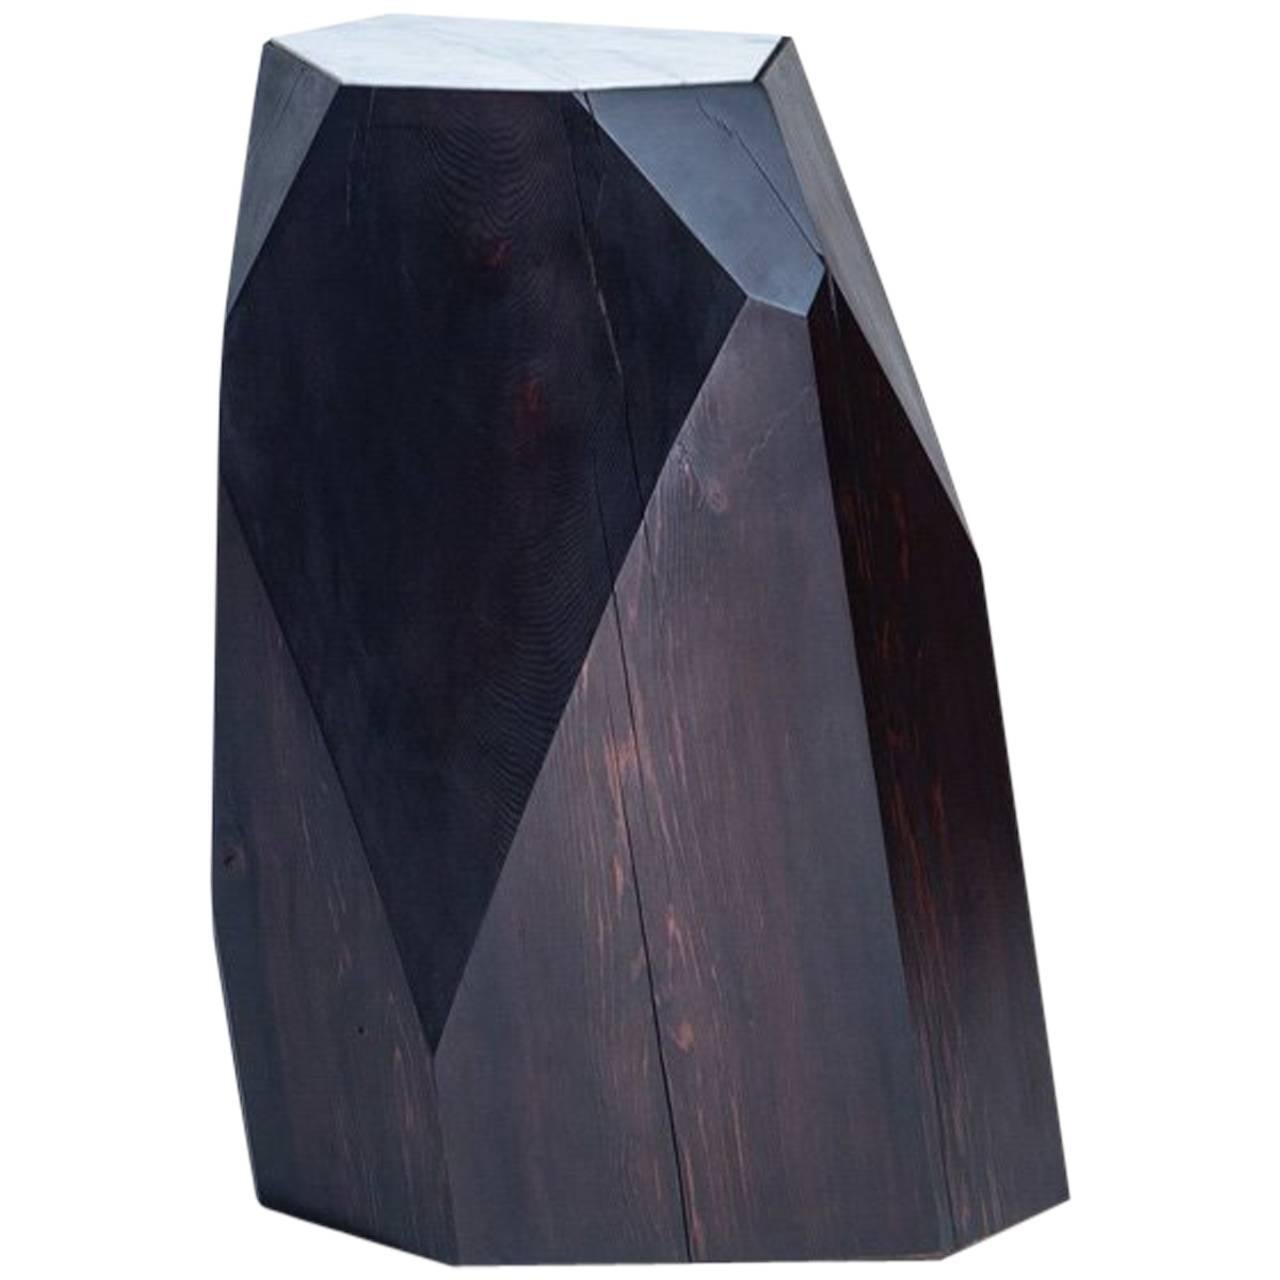 Hocker / Tisch aus Kohle gefärbtem Zedernholz mit Carrara-Marmorplatte von Hinterland Design